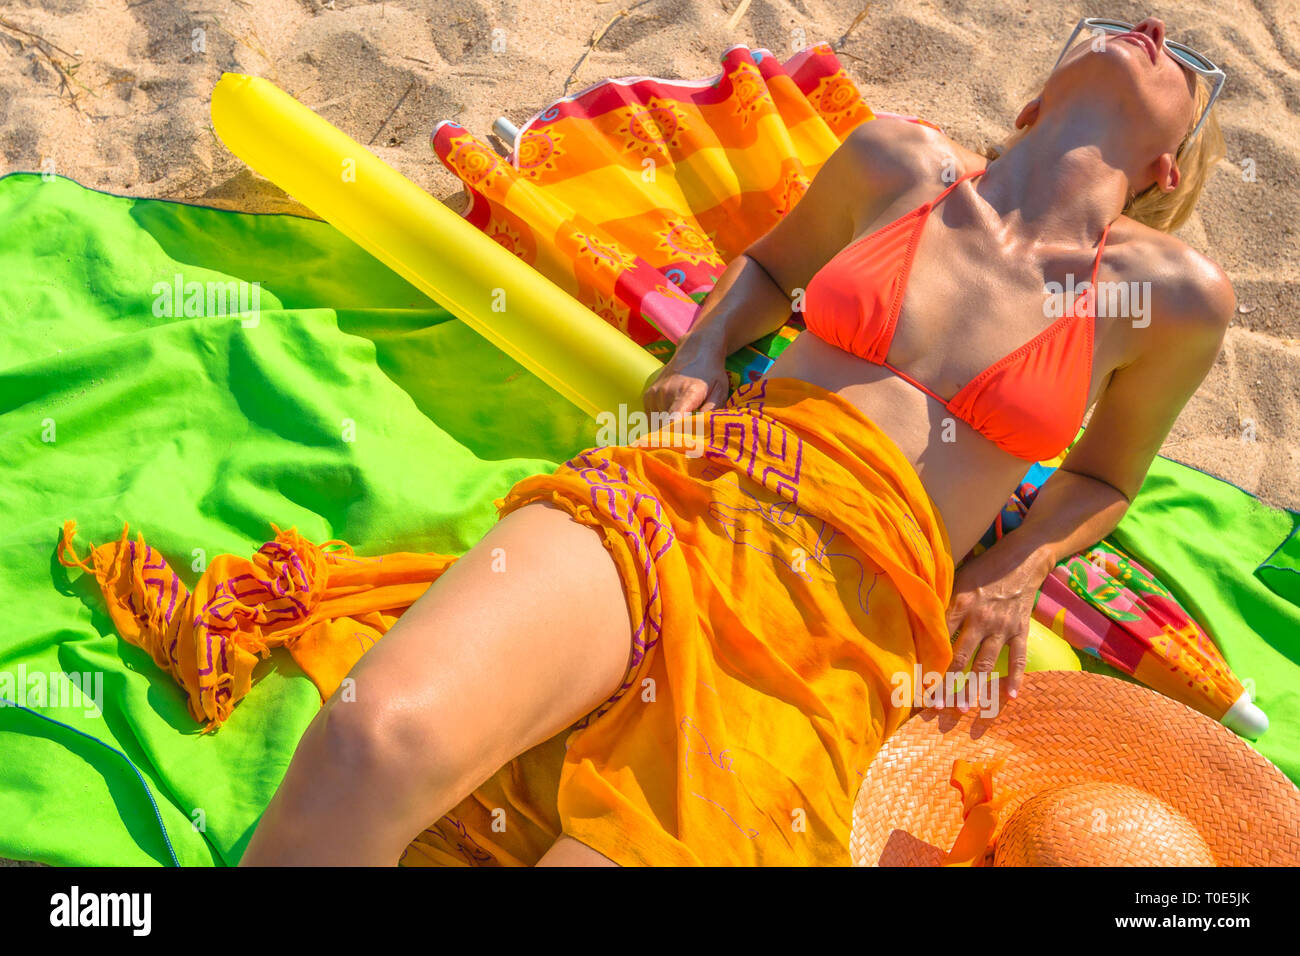 Bronzage d'une femme sur la plage avec des vêtements et l'équipement par la mer l'orange vif, vert et jaune. Parmi les objets : sarong, chapeau, un maillot Banque D'Images